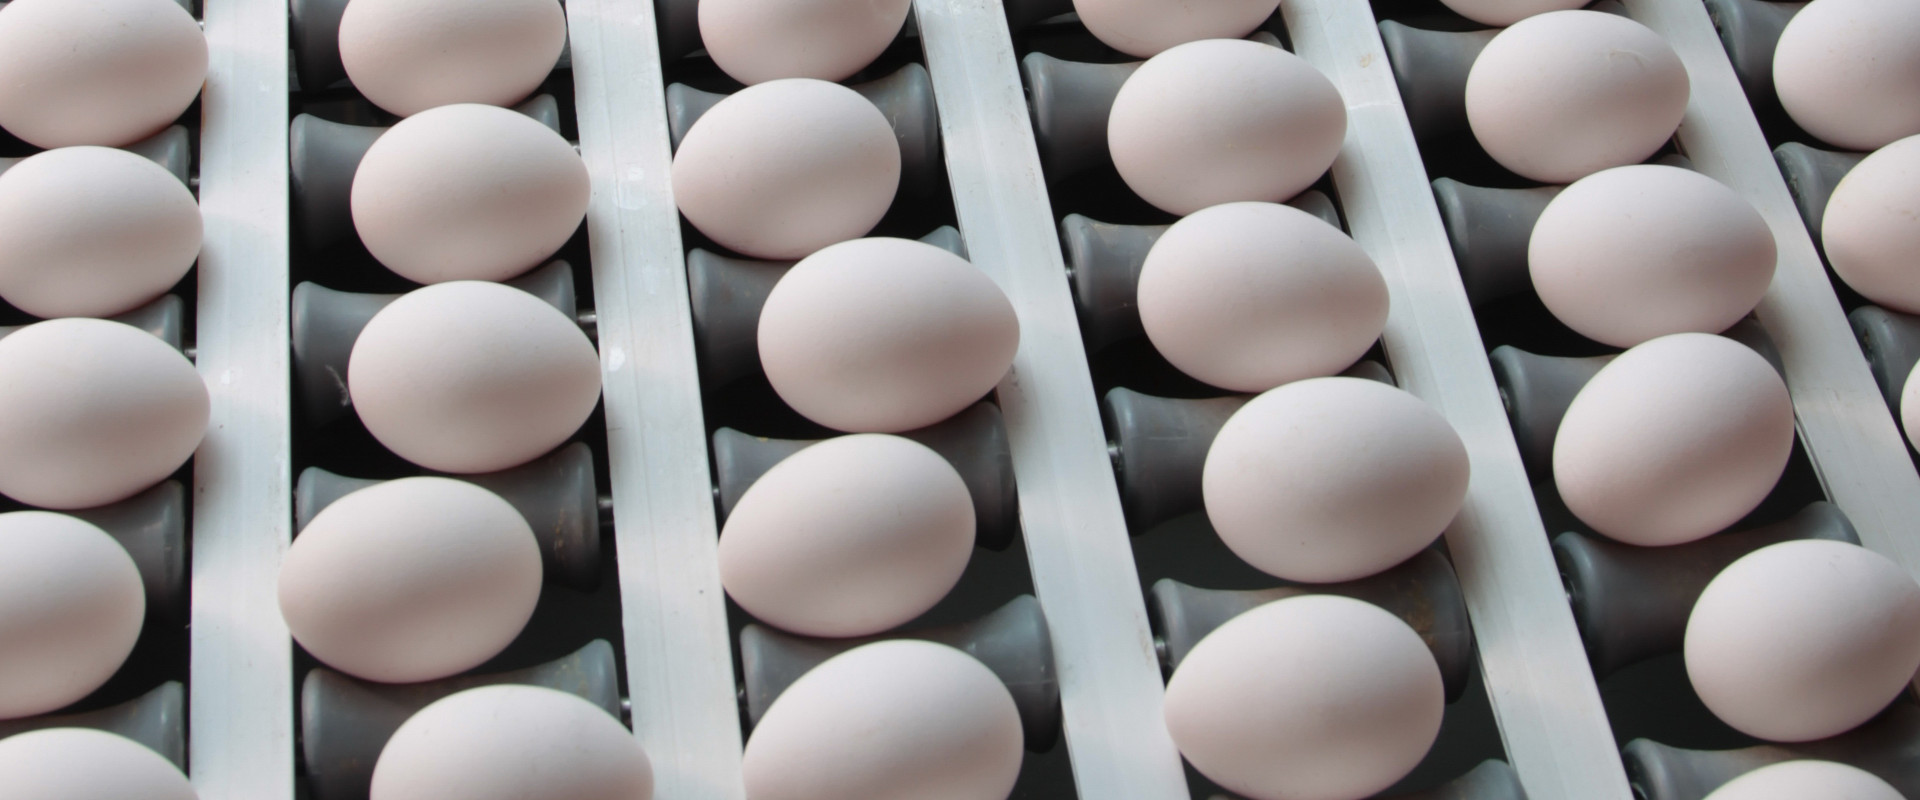 Foto: Eier in der Sortierung